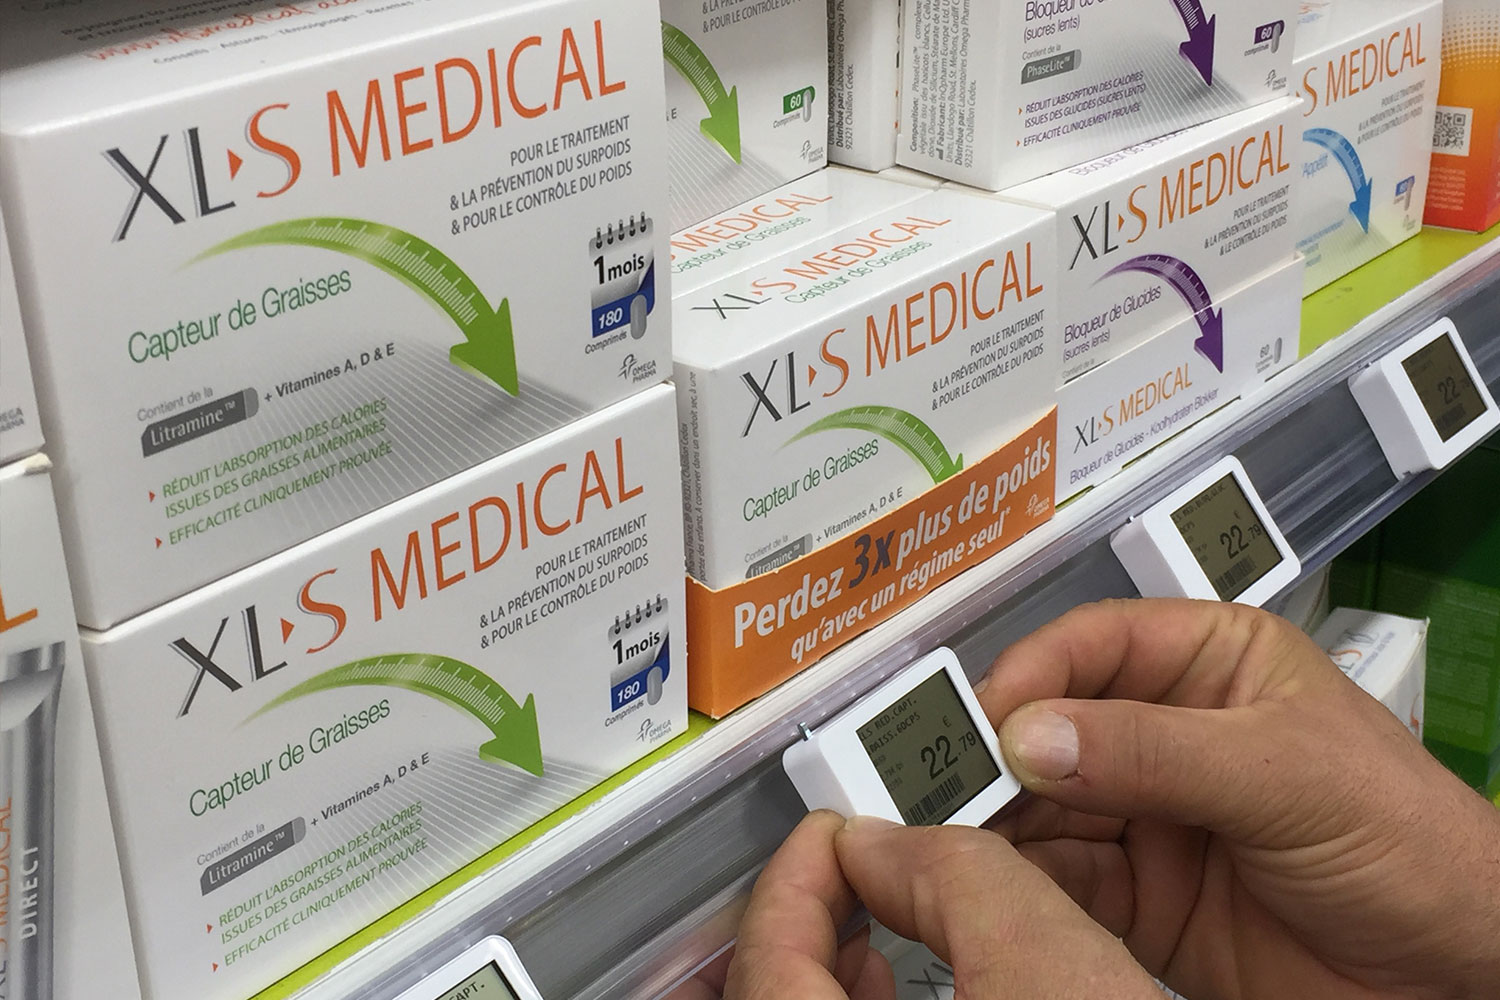 Image de produits santé parapharmacie avec étiquette électronique de gondole